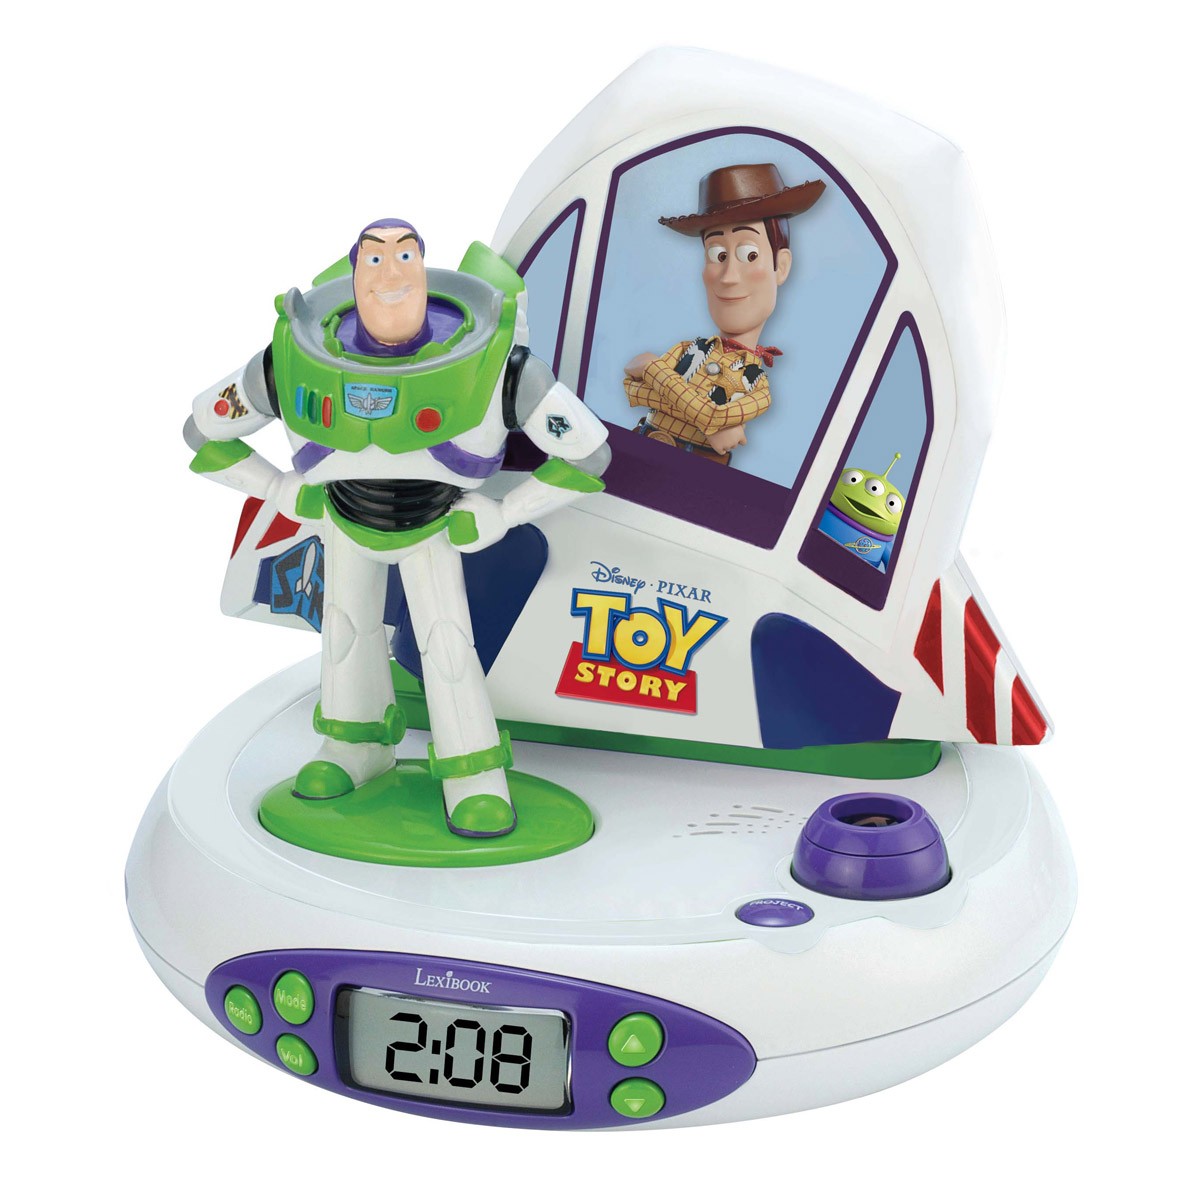 Projektor-Radiowecker Toy Story 4